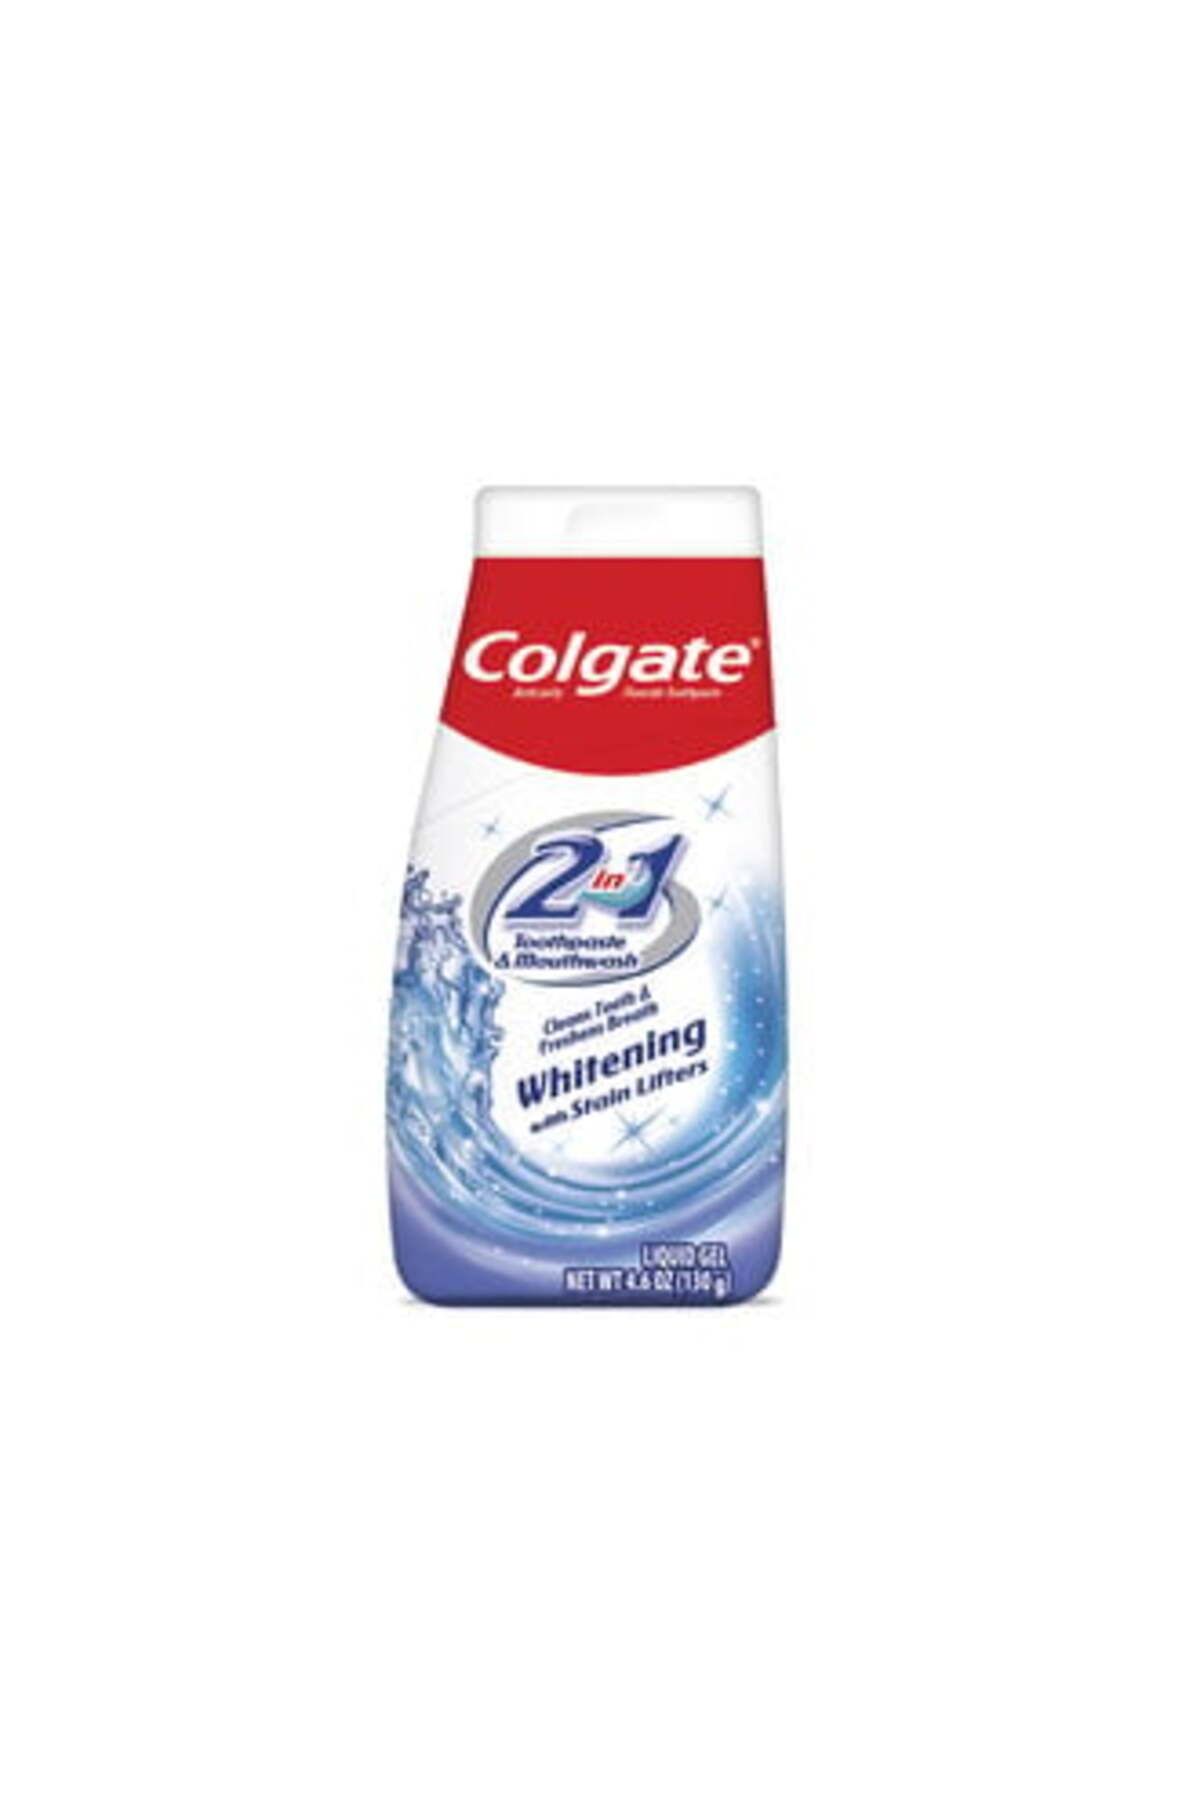 Colgate 2in1 Beyazlık Beyazlatıcı Diş Macunu 130 gr ( 2 ADET )